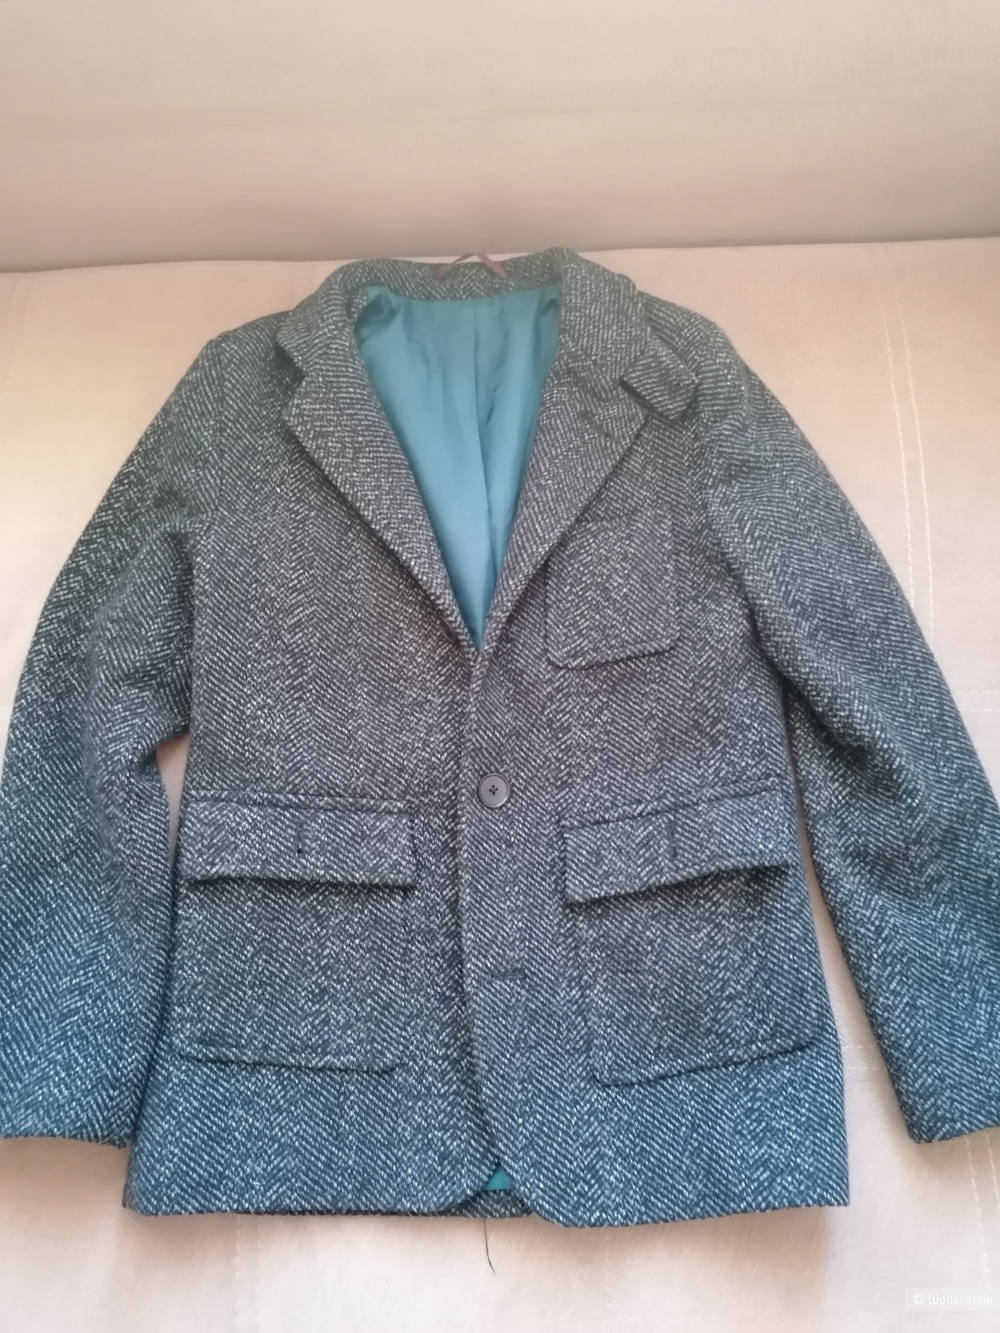 Пальто H&m размер 140-150